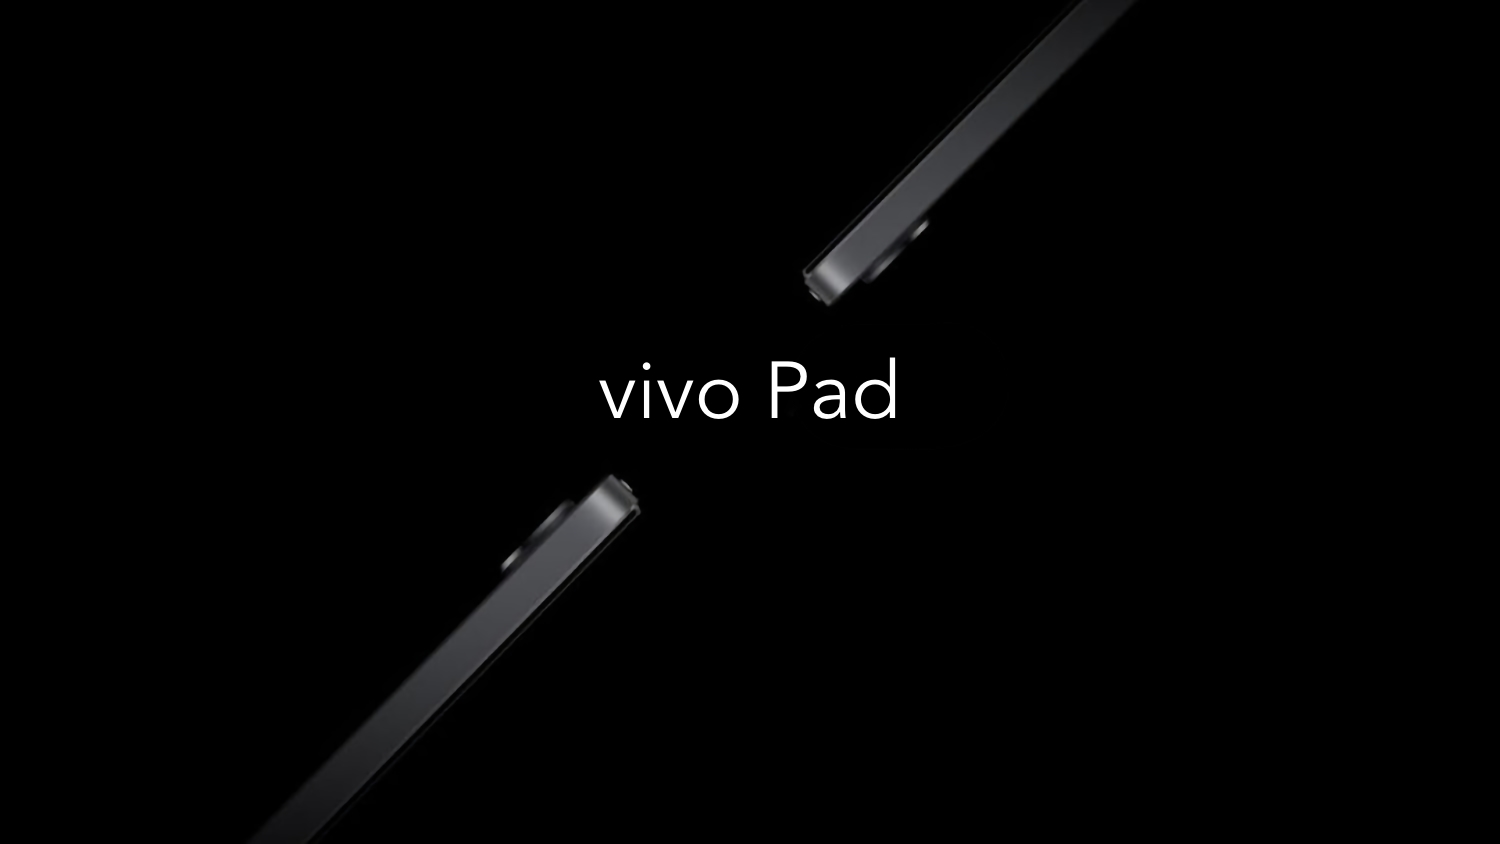 Quelle: Vivos erstes Tablet wird im vierten Quartal dieses Jahres auf den Markt kommen